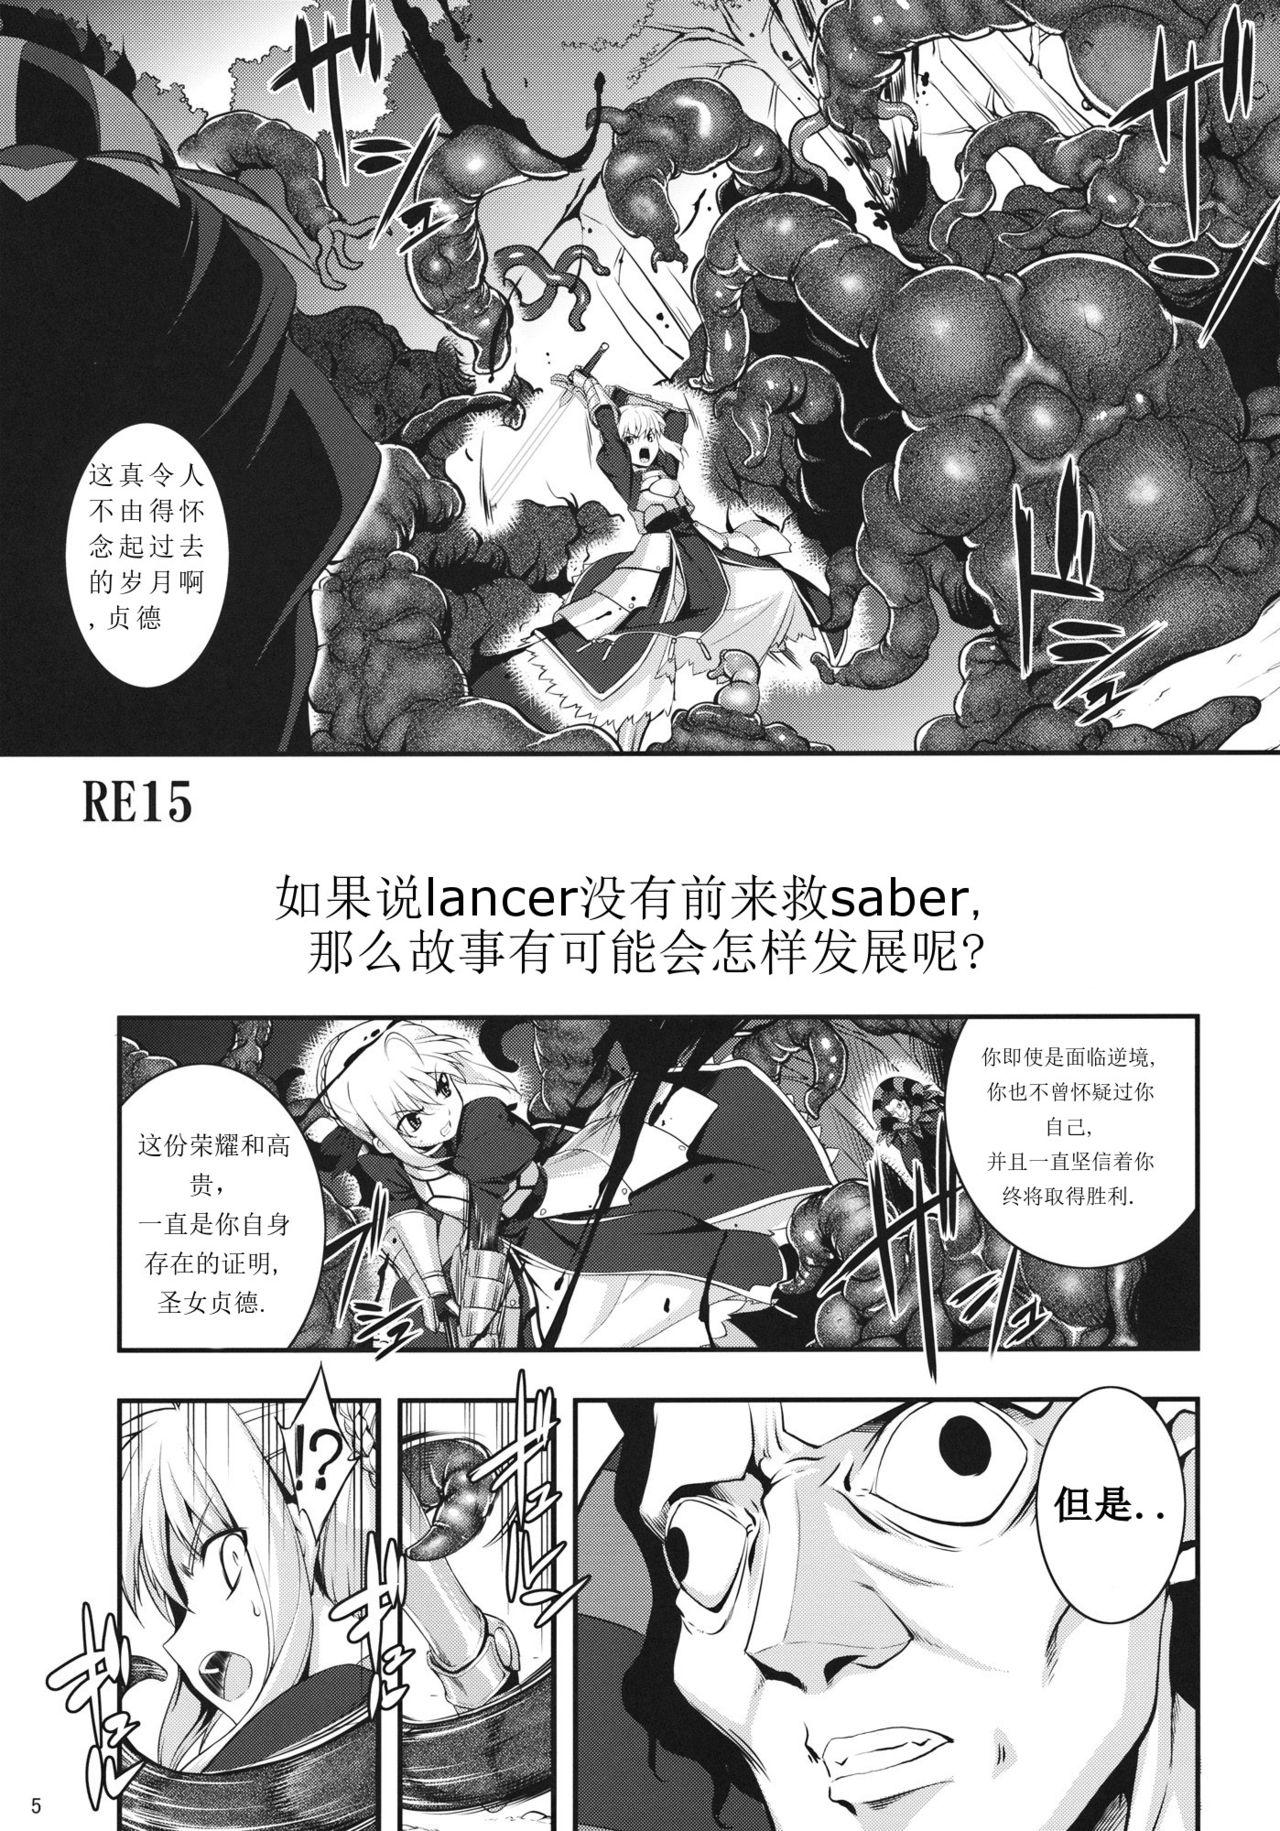 Threesome RE15 - Fate zero Baile - Page 4